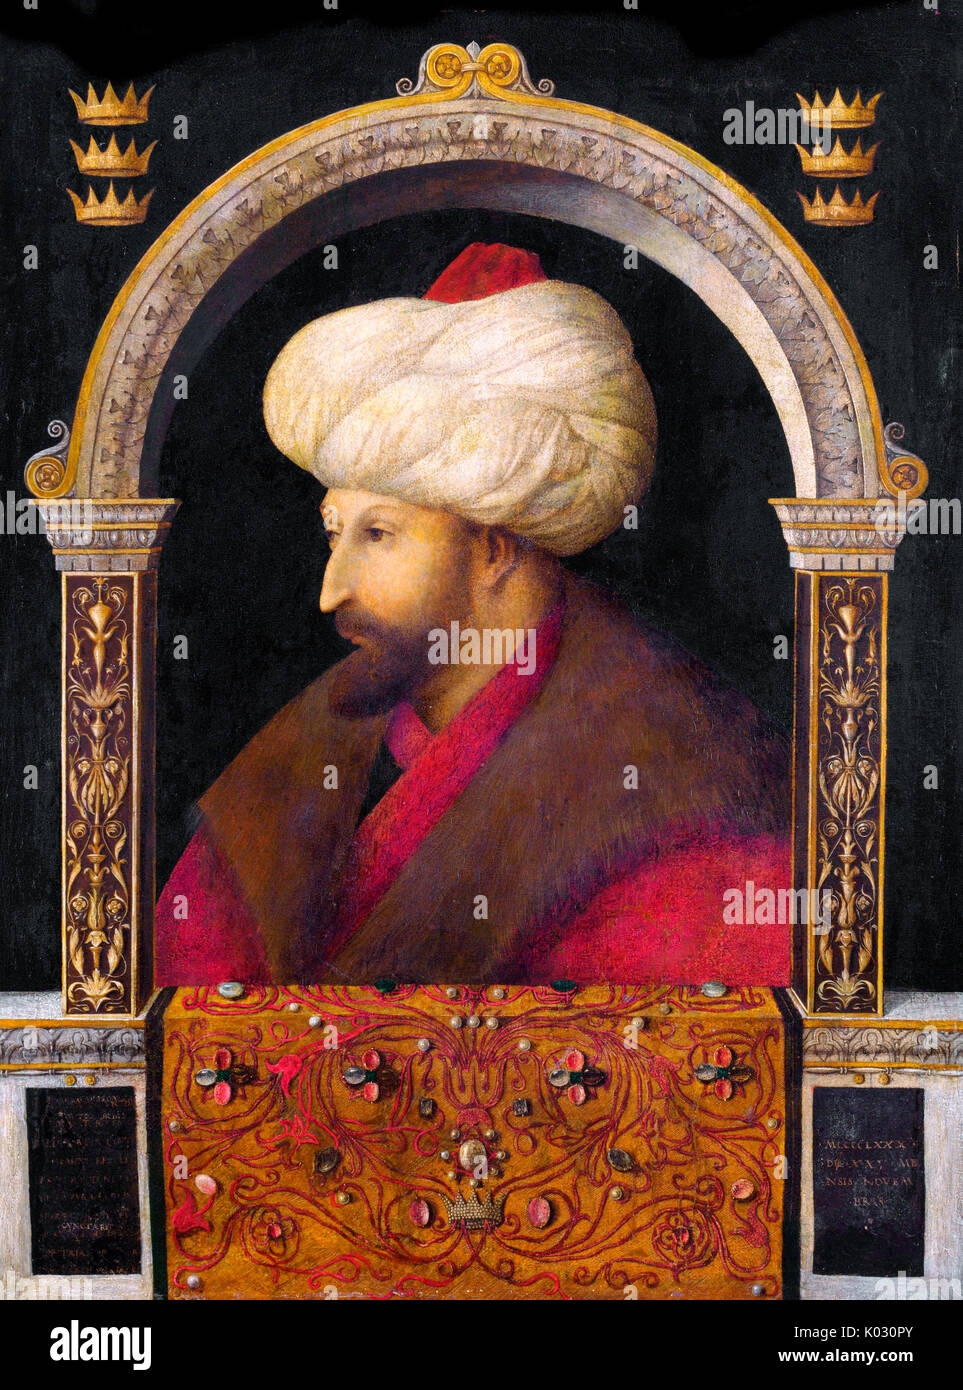 Le Portrait de Sultan Ottoman Mehmed le Conquérant par le peintre italien Gentile Bellini, 1480. Banque D'Images